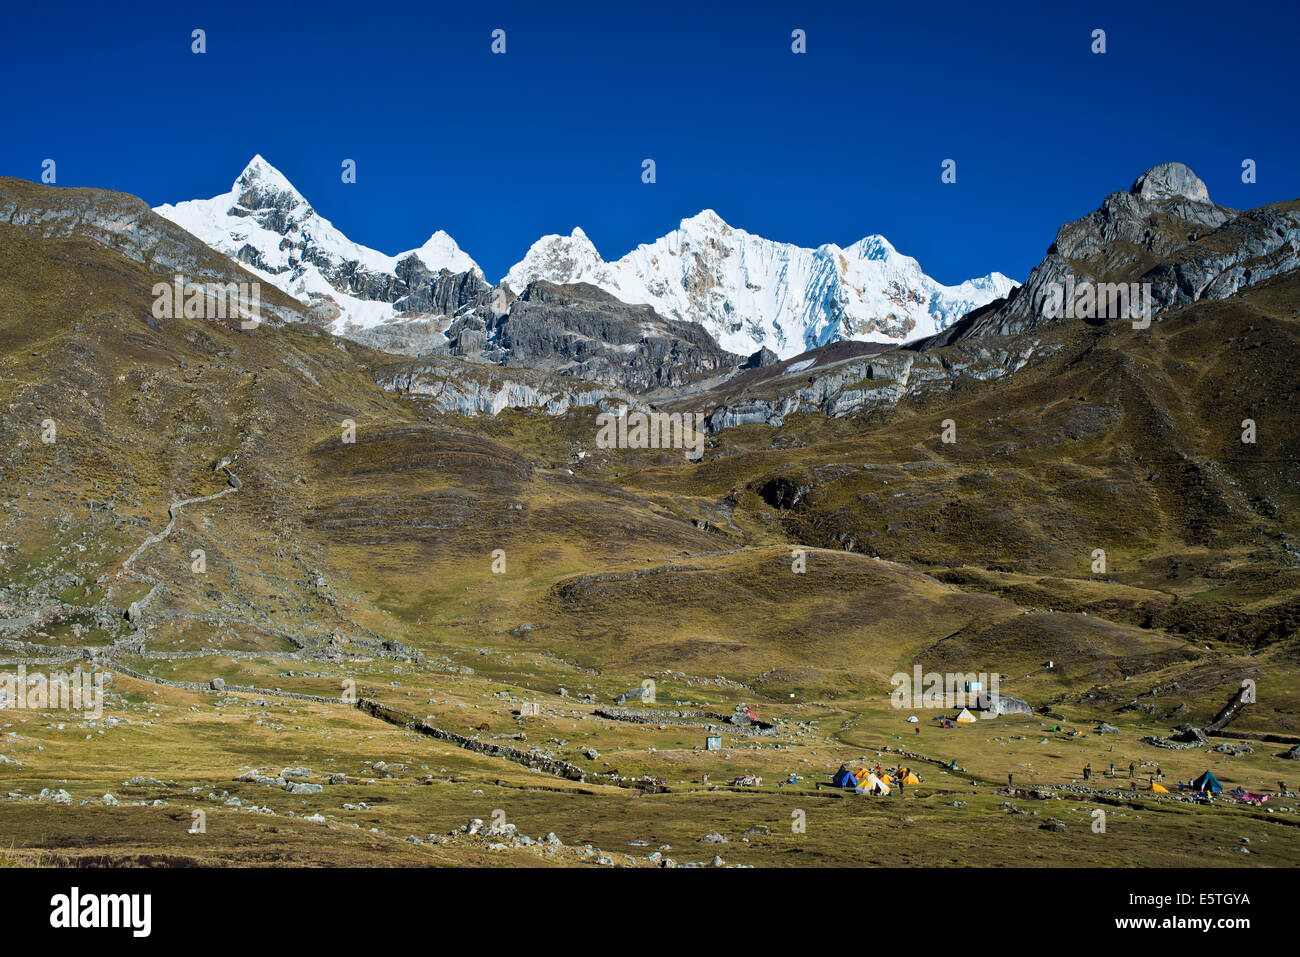 Campo in tenda, sul retro il snow-capped Trapecio Mt e Mt Nevados Jurau, Cordillera Huayhuash mountain range, nel nord del Perù Foto Stock